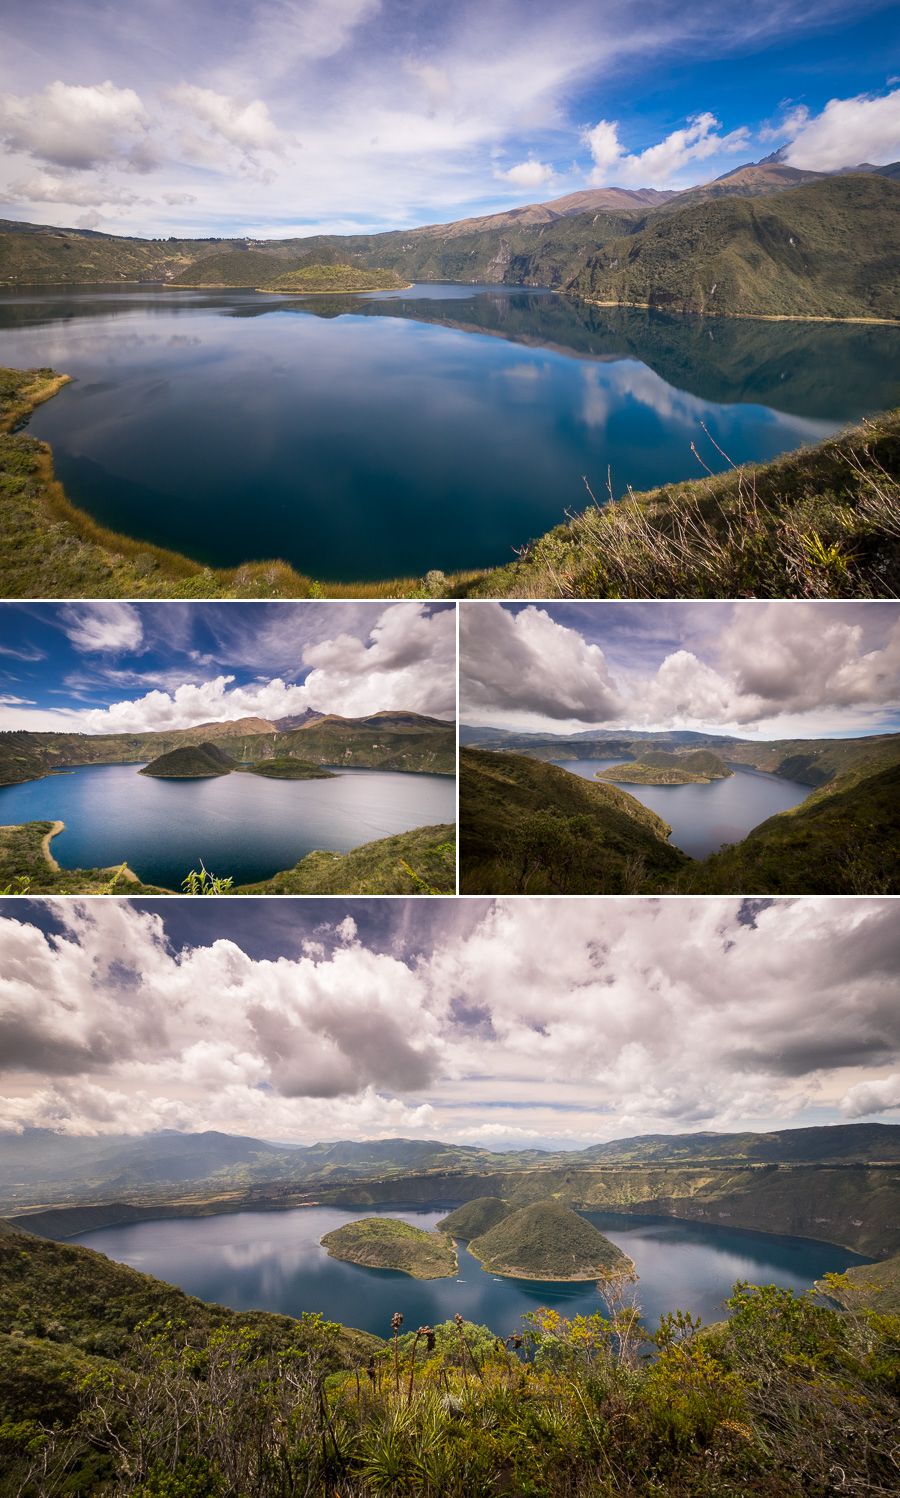 Various views of Laguna Cuicocha, taken while hiking the crater rim near near Otavalo, Ecuador